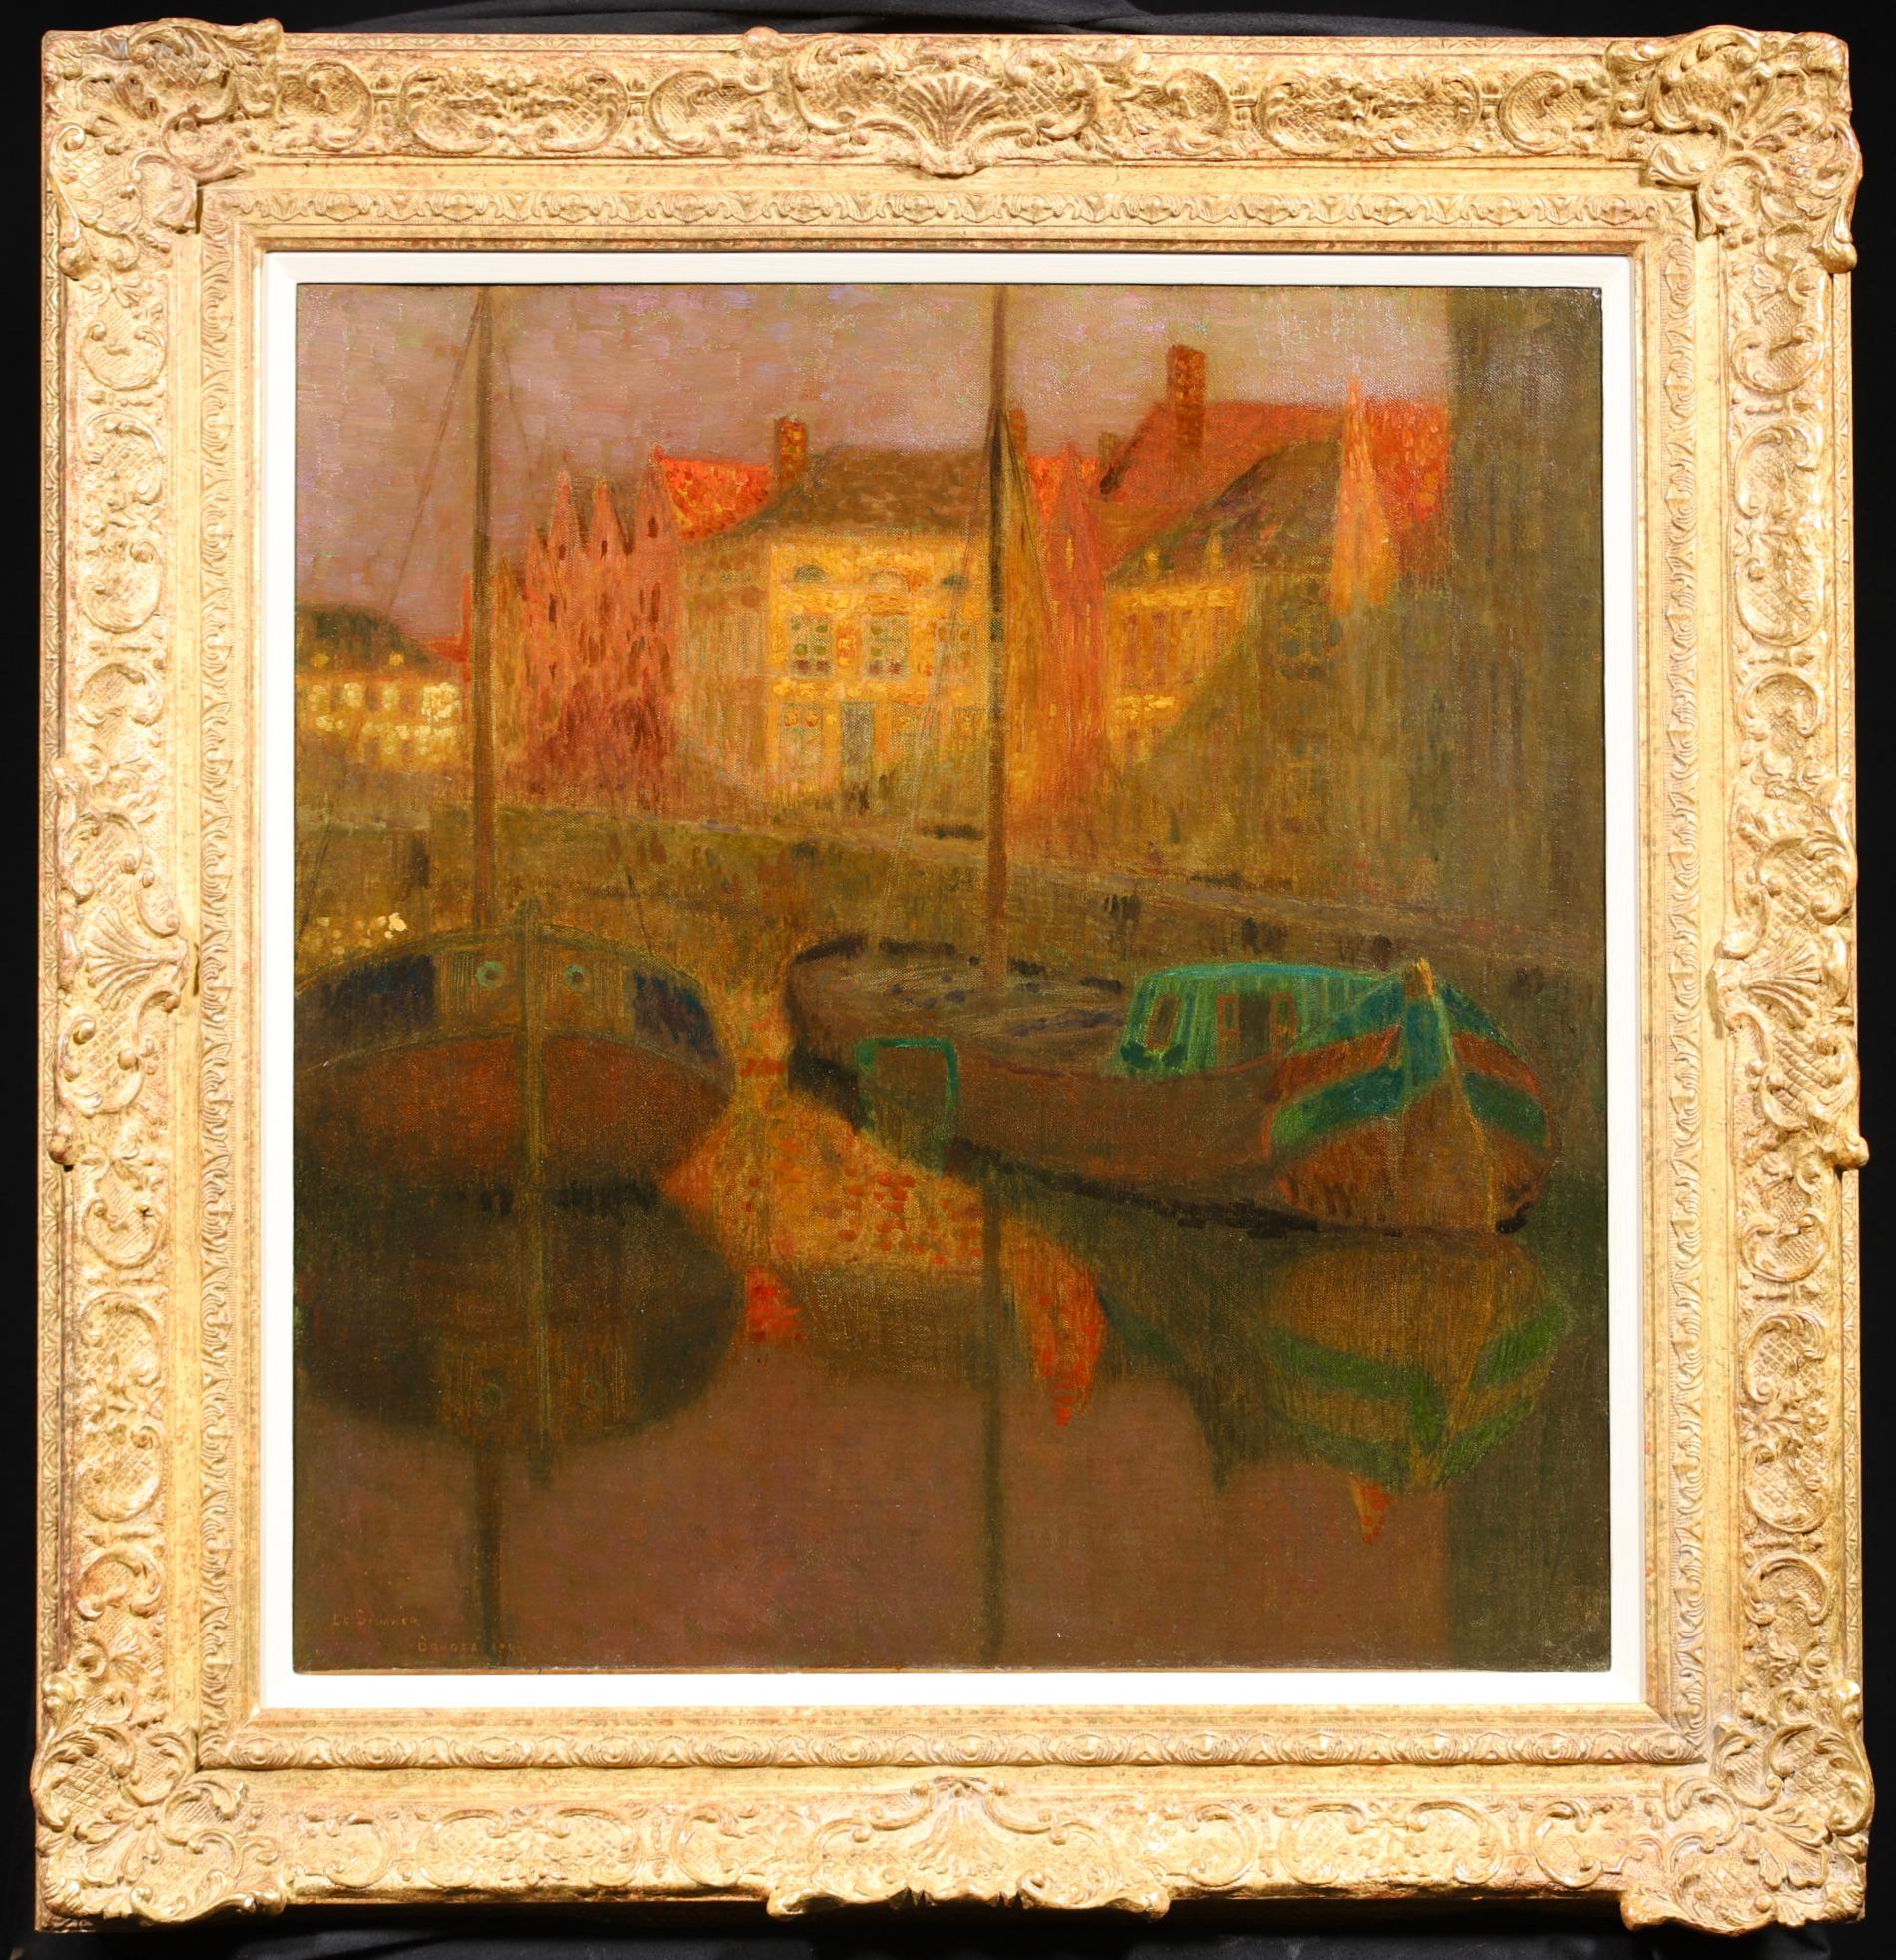 Signiertes postimpressionistisches Landschaftsöl auf Leinwand des französischen Malers Henri Le Sidaner. Dieses atemberaubende Stück  zeigt zwei Fischerboote, die bei Sonnenuntergang in einem Fischerdorf vor Anker liegen. Das letzte Licht des Tages